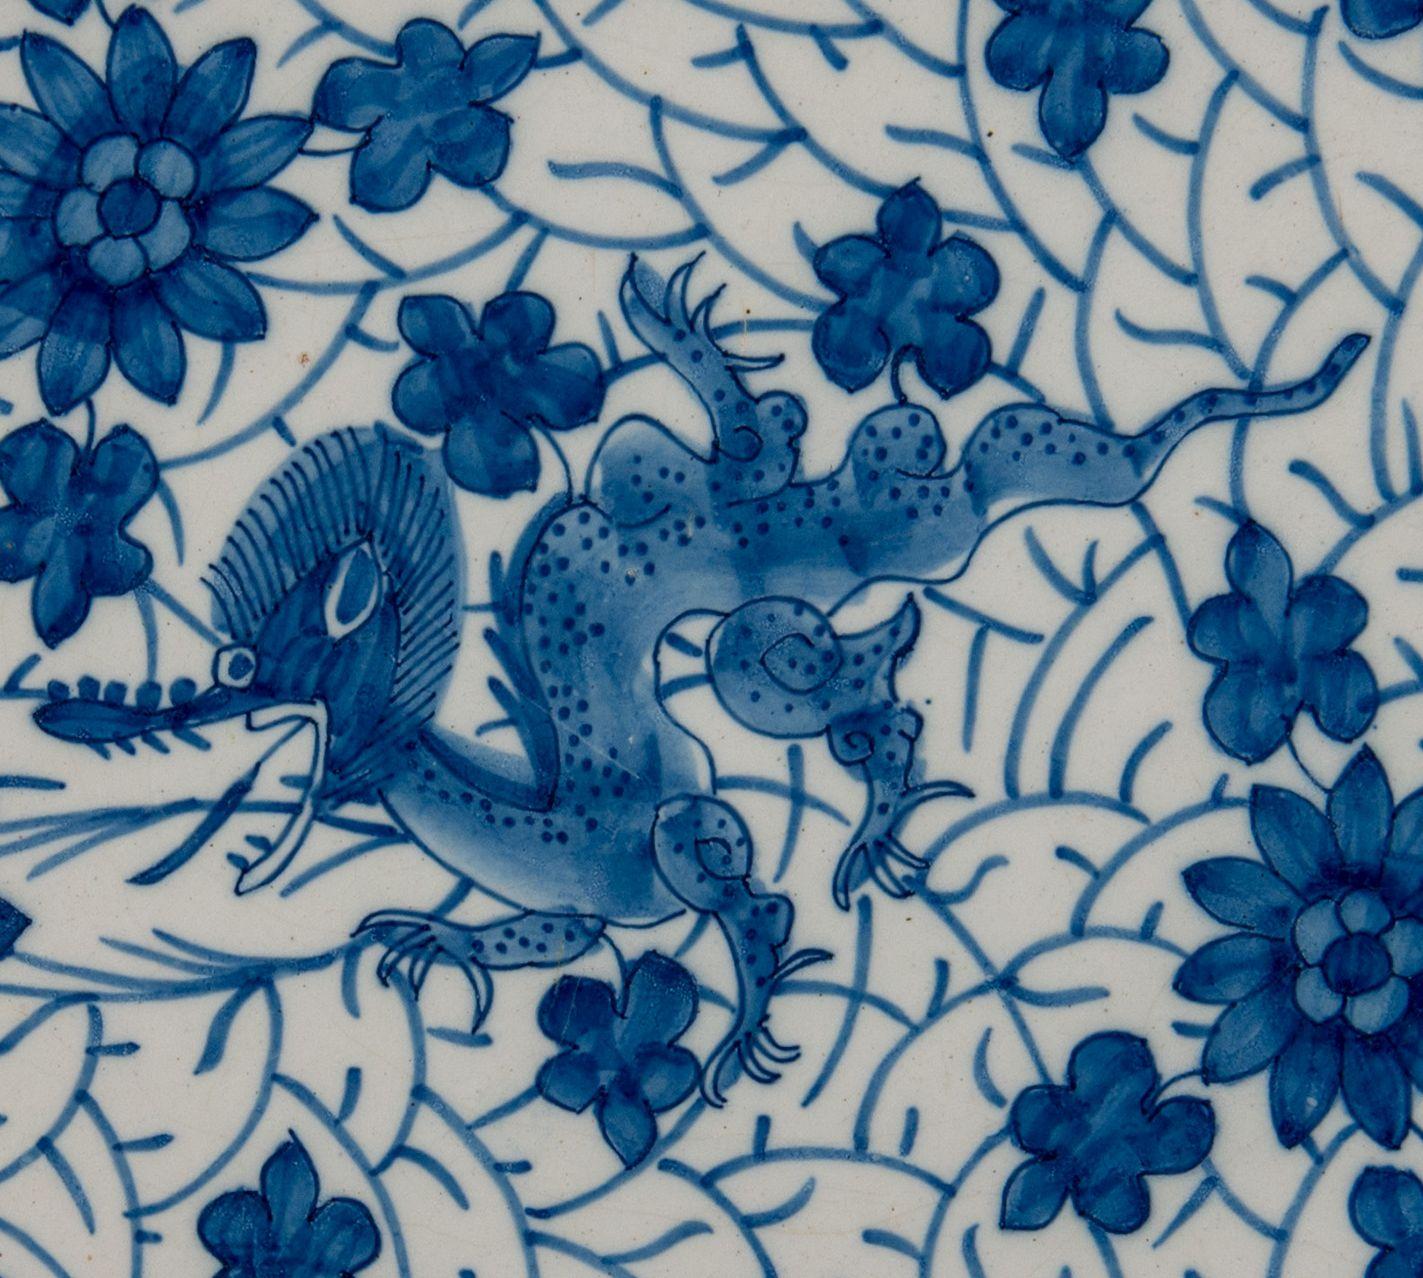 Blauer und weißer Drachenteller. Delft, 1722-1757

Die griechische A-Keramikmarke: AIK, Periode J van der Kool (1722-1757)
Schale mit blau-weißem Dekor eines Drachens auf einem dichten Grund aus Blumen und Blättern. Der Brunnen ist undekoriert.